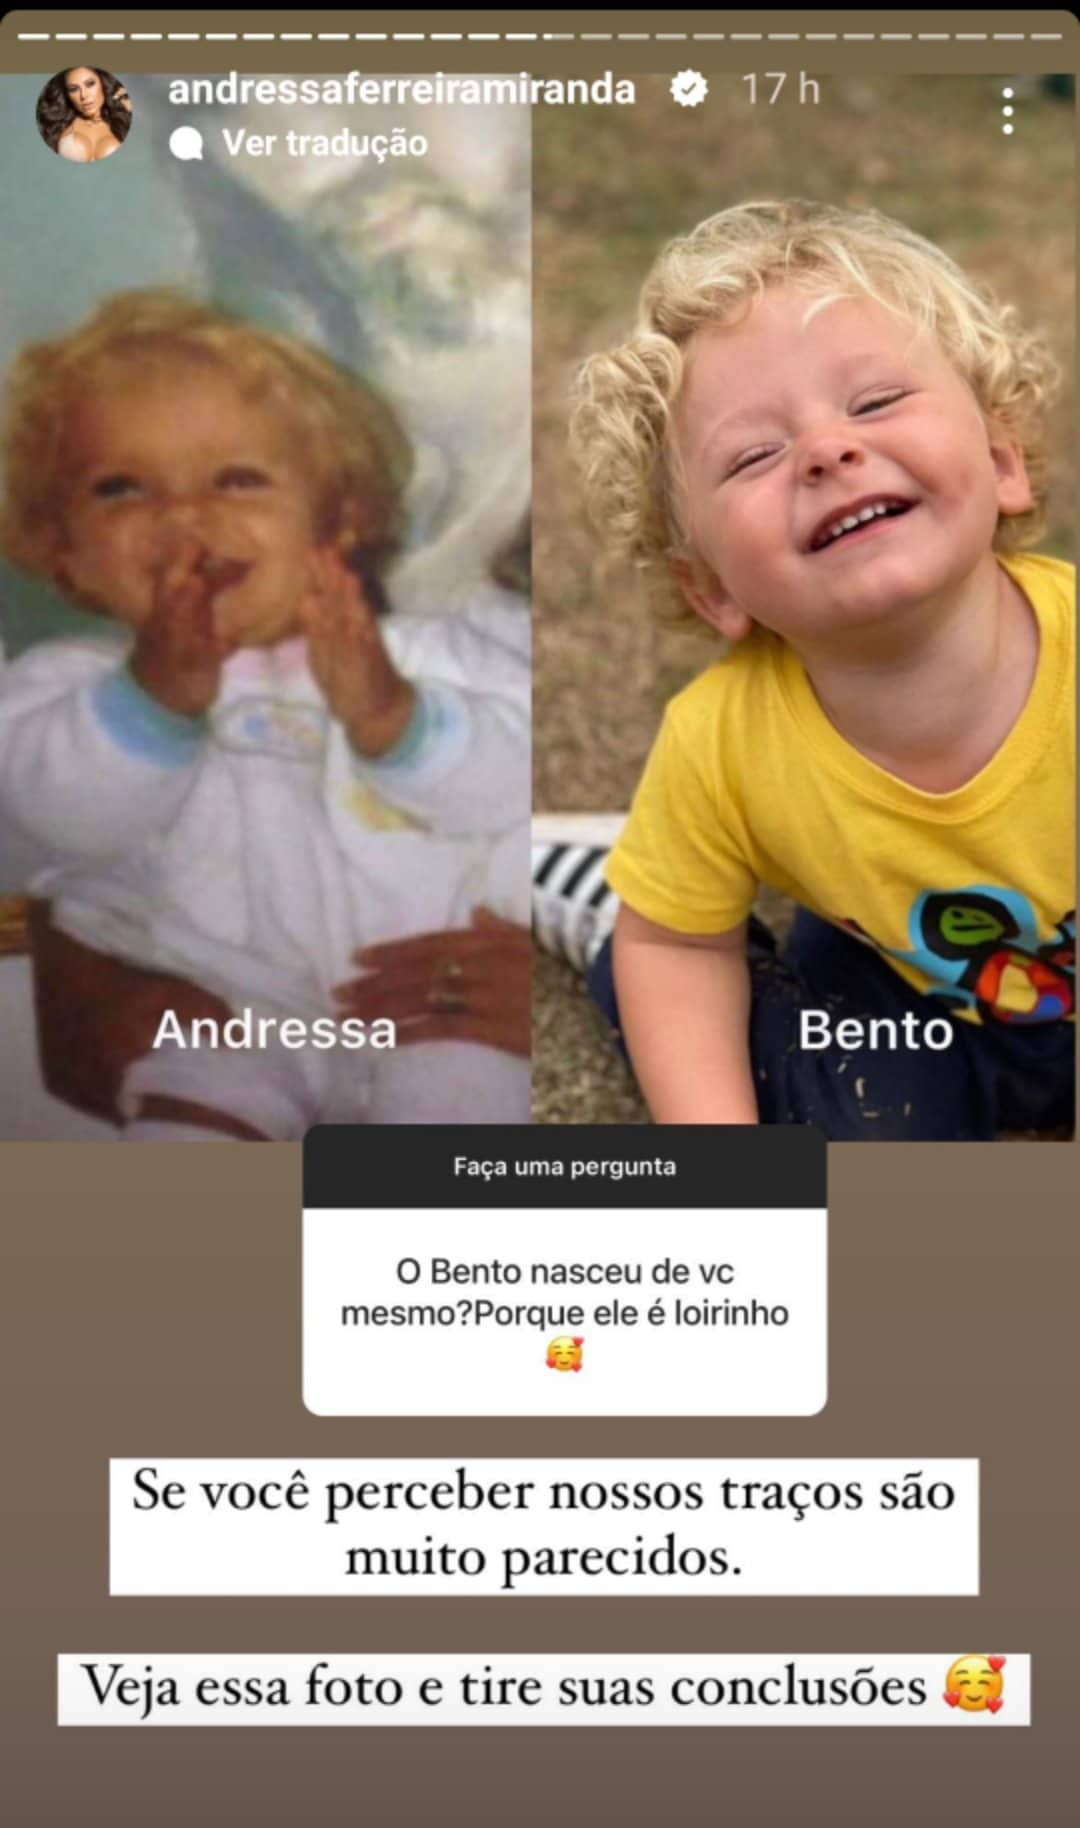 Andressa Ferreira filho Bento